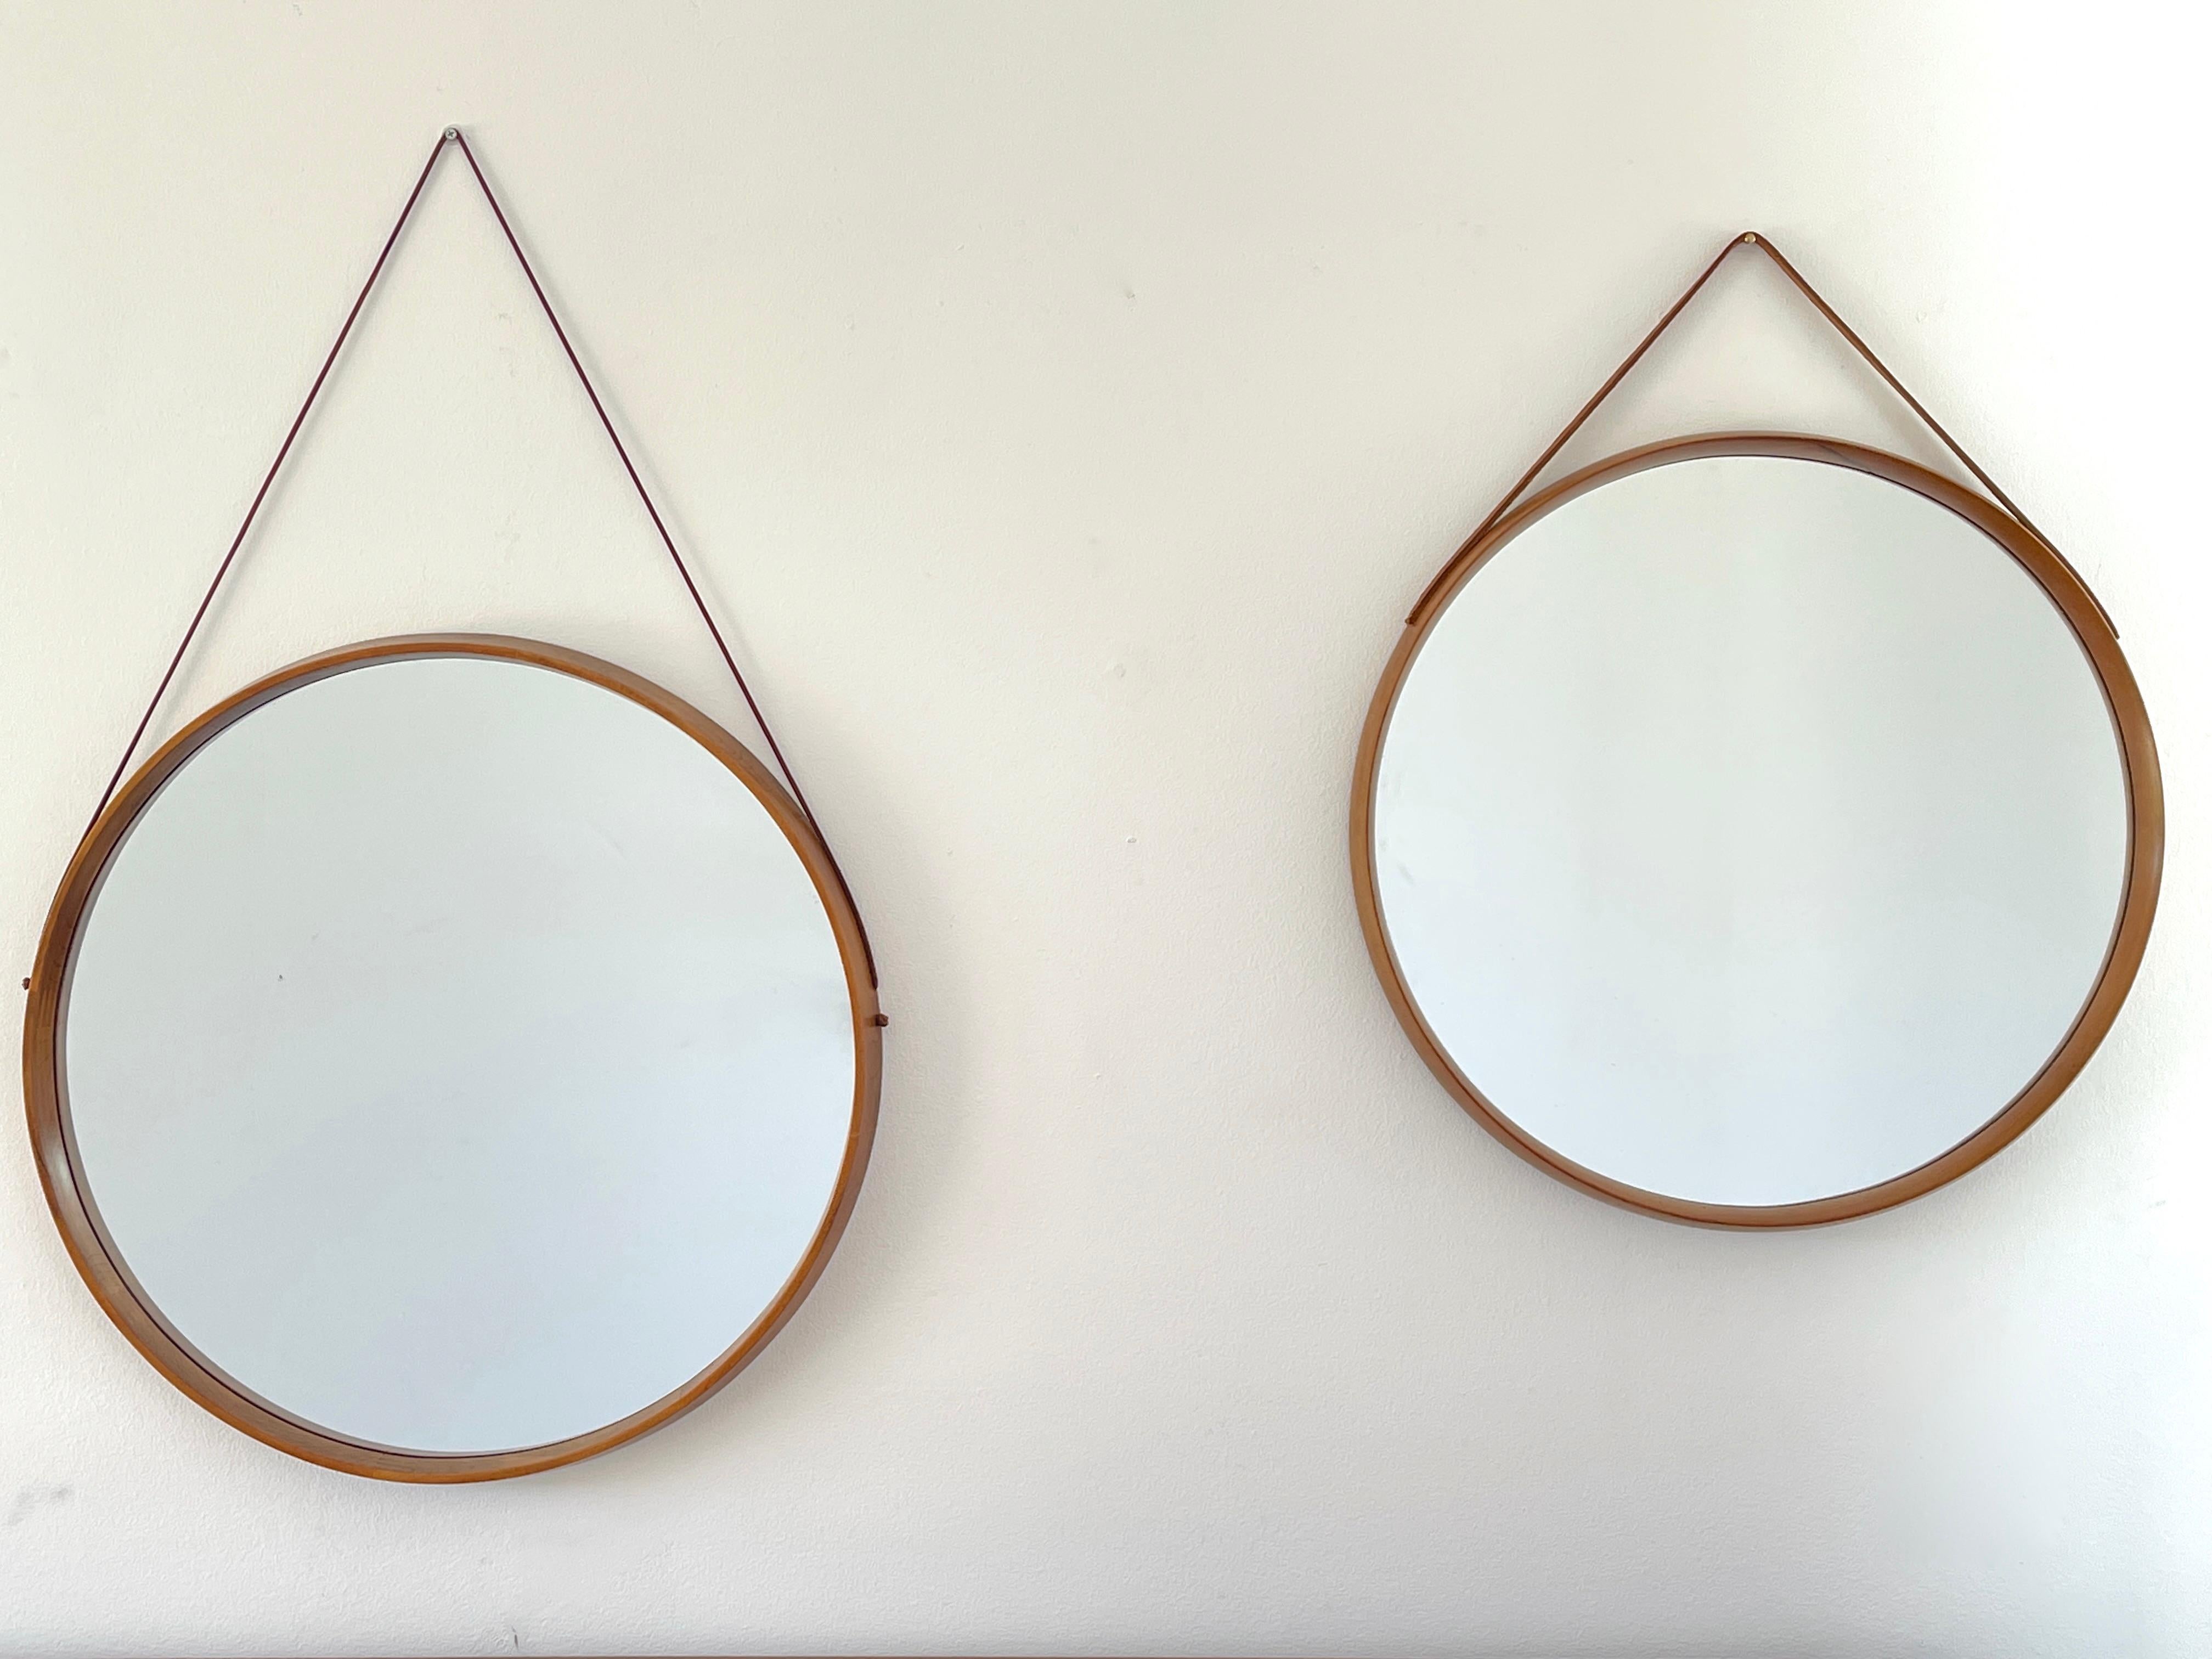 Miroirs italiens en bois de teck avec de belles articulations et un simple bracelet en cuir. 

2 disponibles - taille et hauteur de la sangle légèrement différentes 

Prix individuel

Le plus petit miroir a un diamètre de 21,25 pouces.